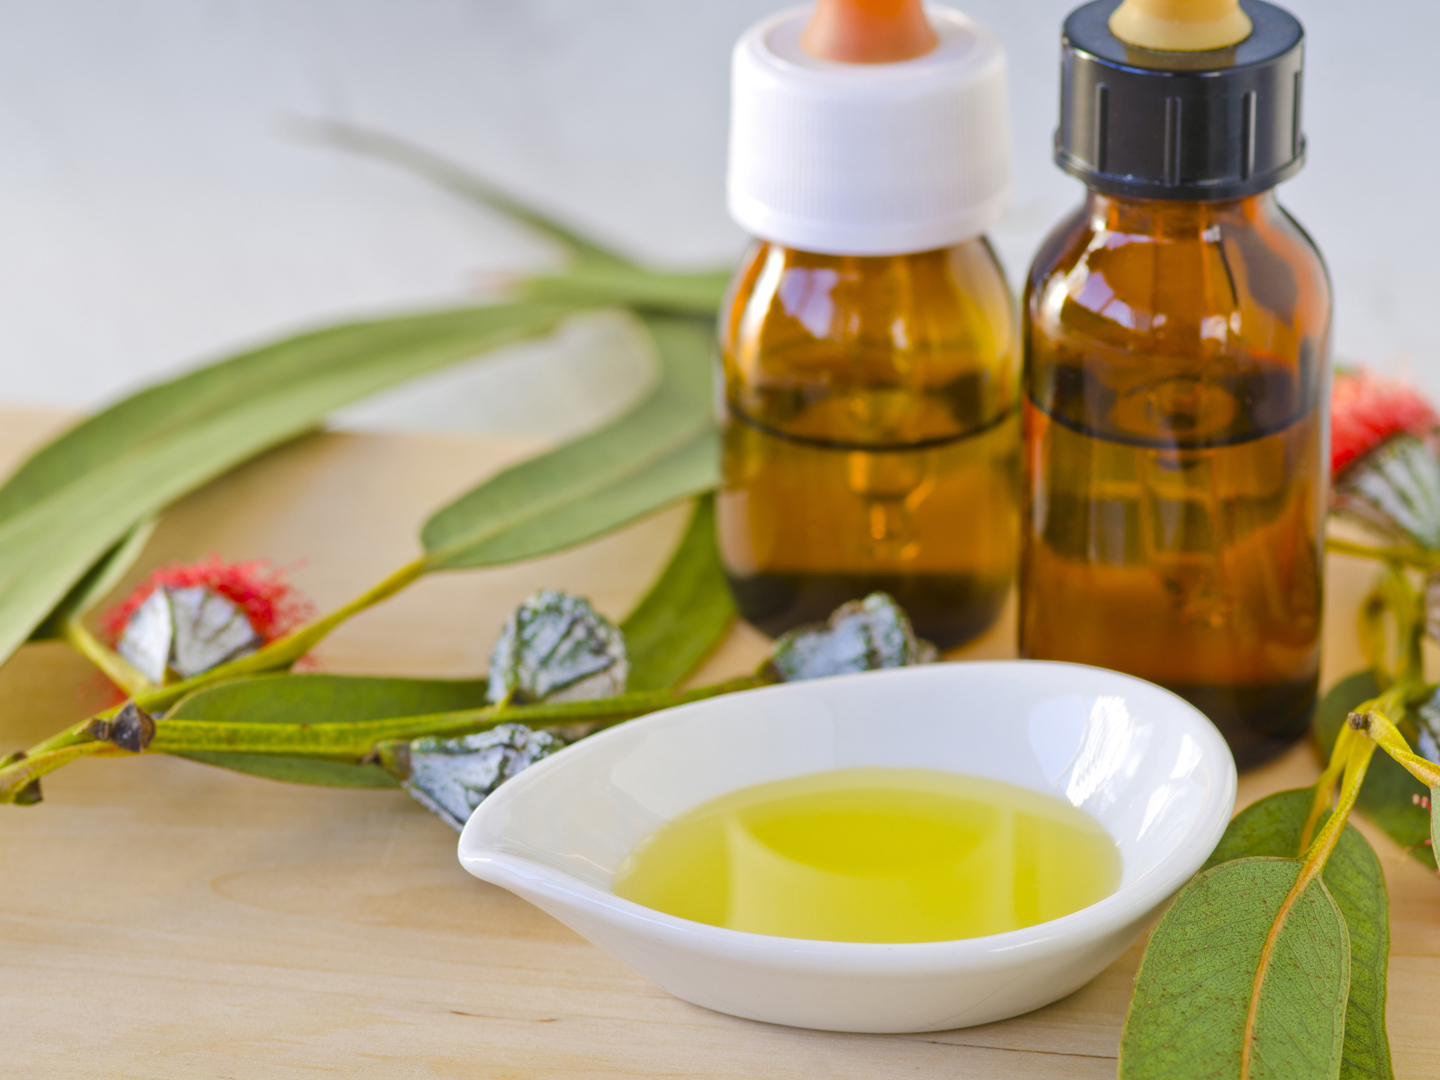 Lemon Eucalyptus Oil: Best Bug Repellent? - Ask Dr. Weil